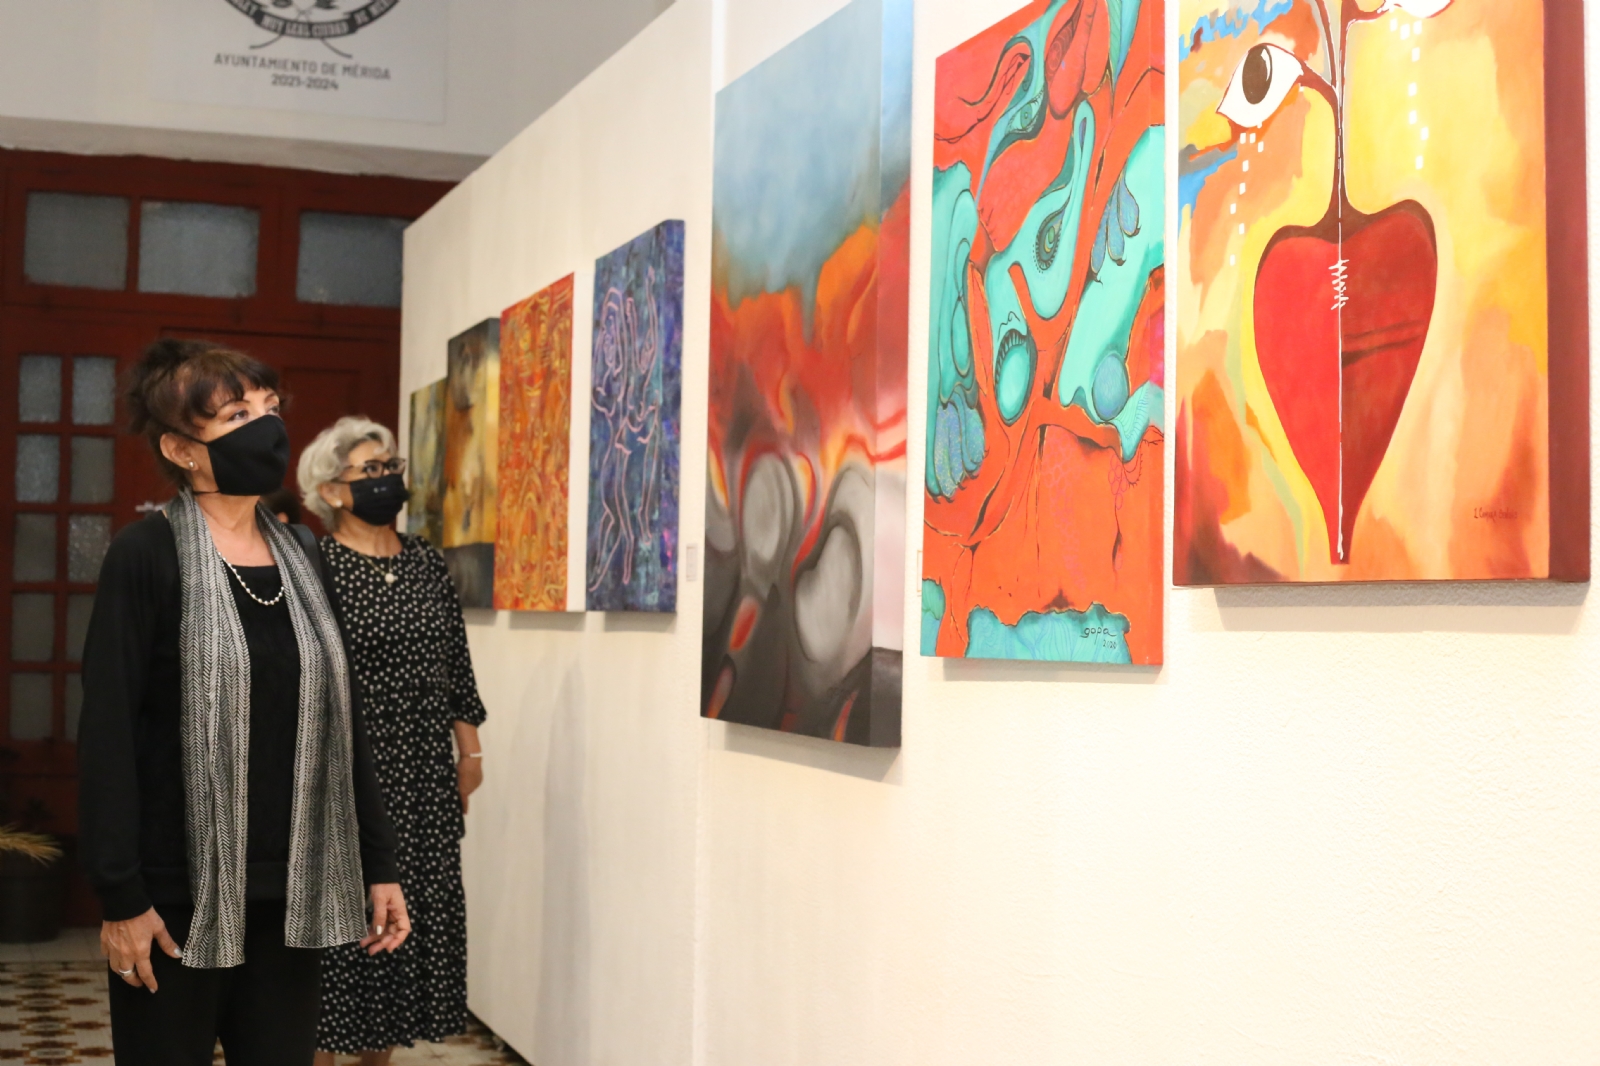 Mérida: Colectivo inaugura exposición "Emociones" en el centro cultural José Marti